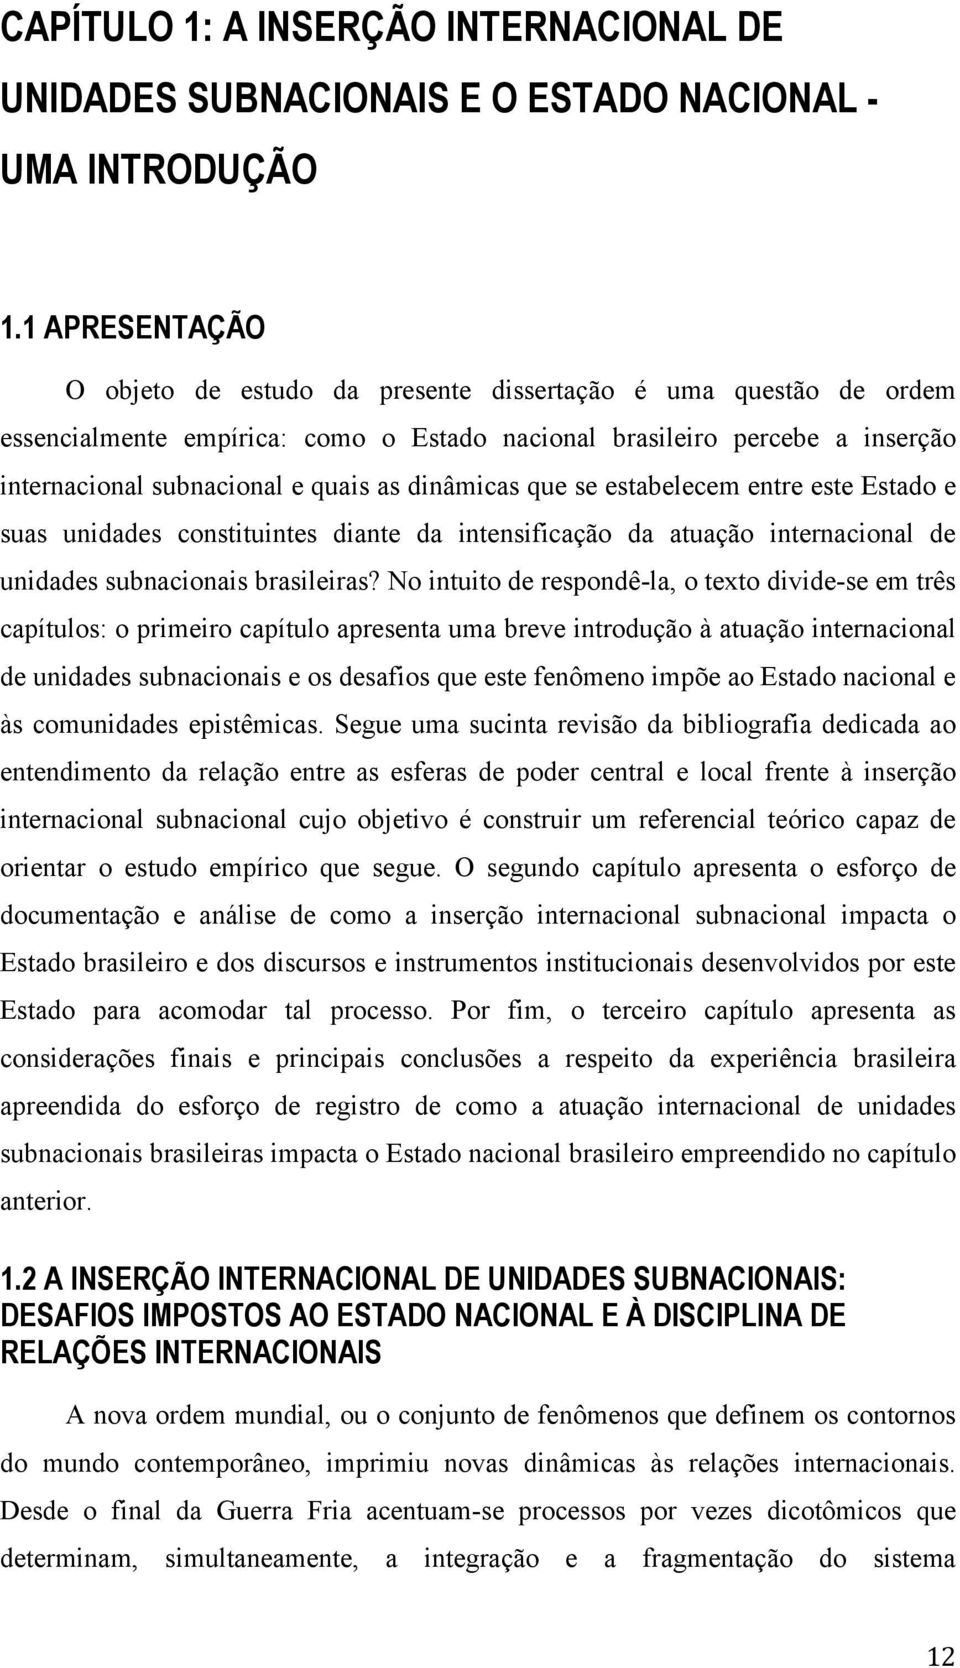 dinâmicas que se estabelecem entre este Estado e suas unidades constituintes diante da intensificação da atuação internacional de unidades subnacionais brasileiras?